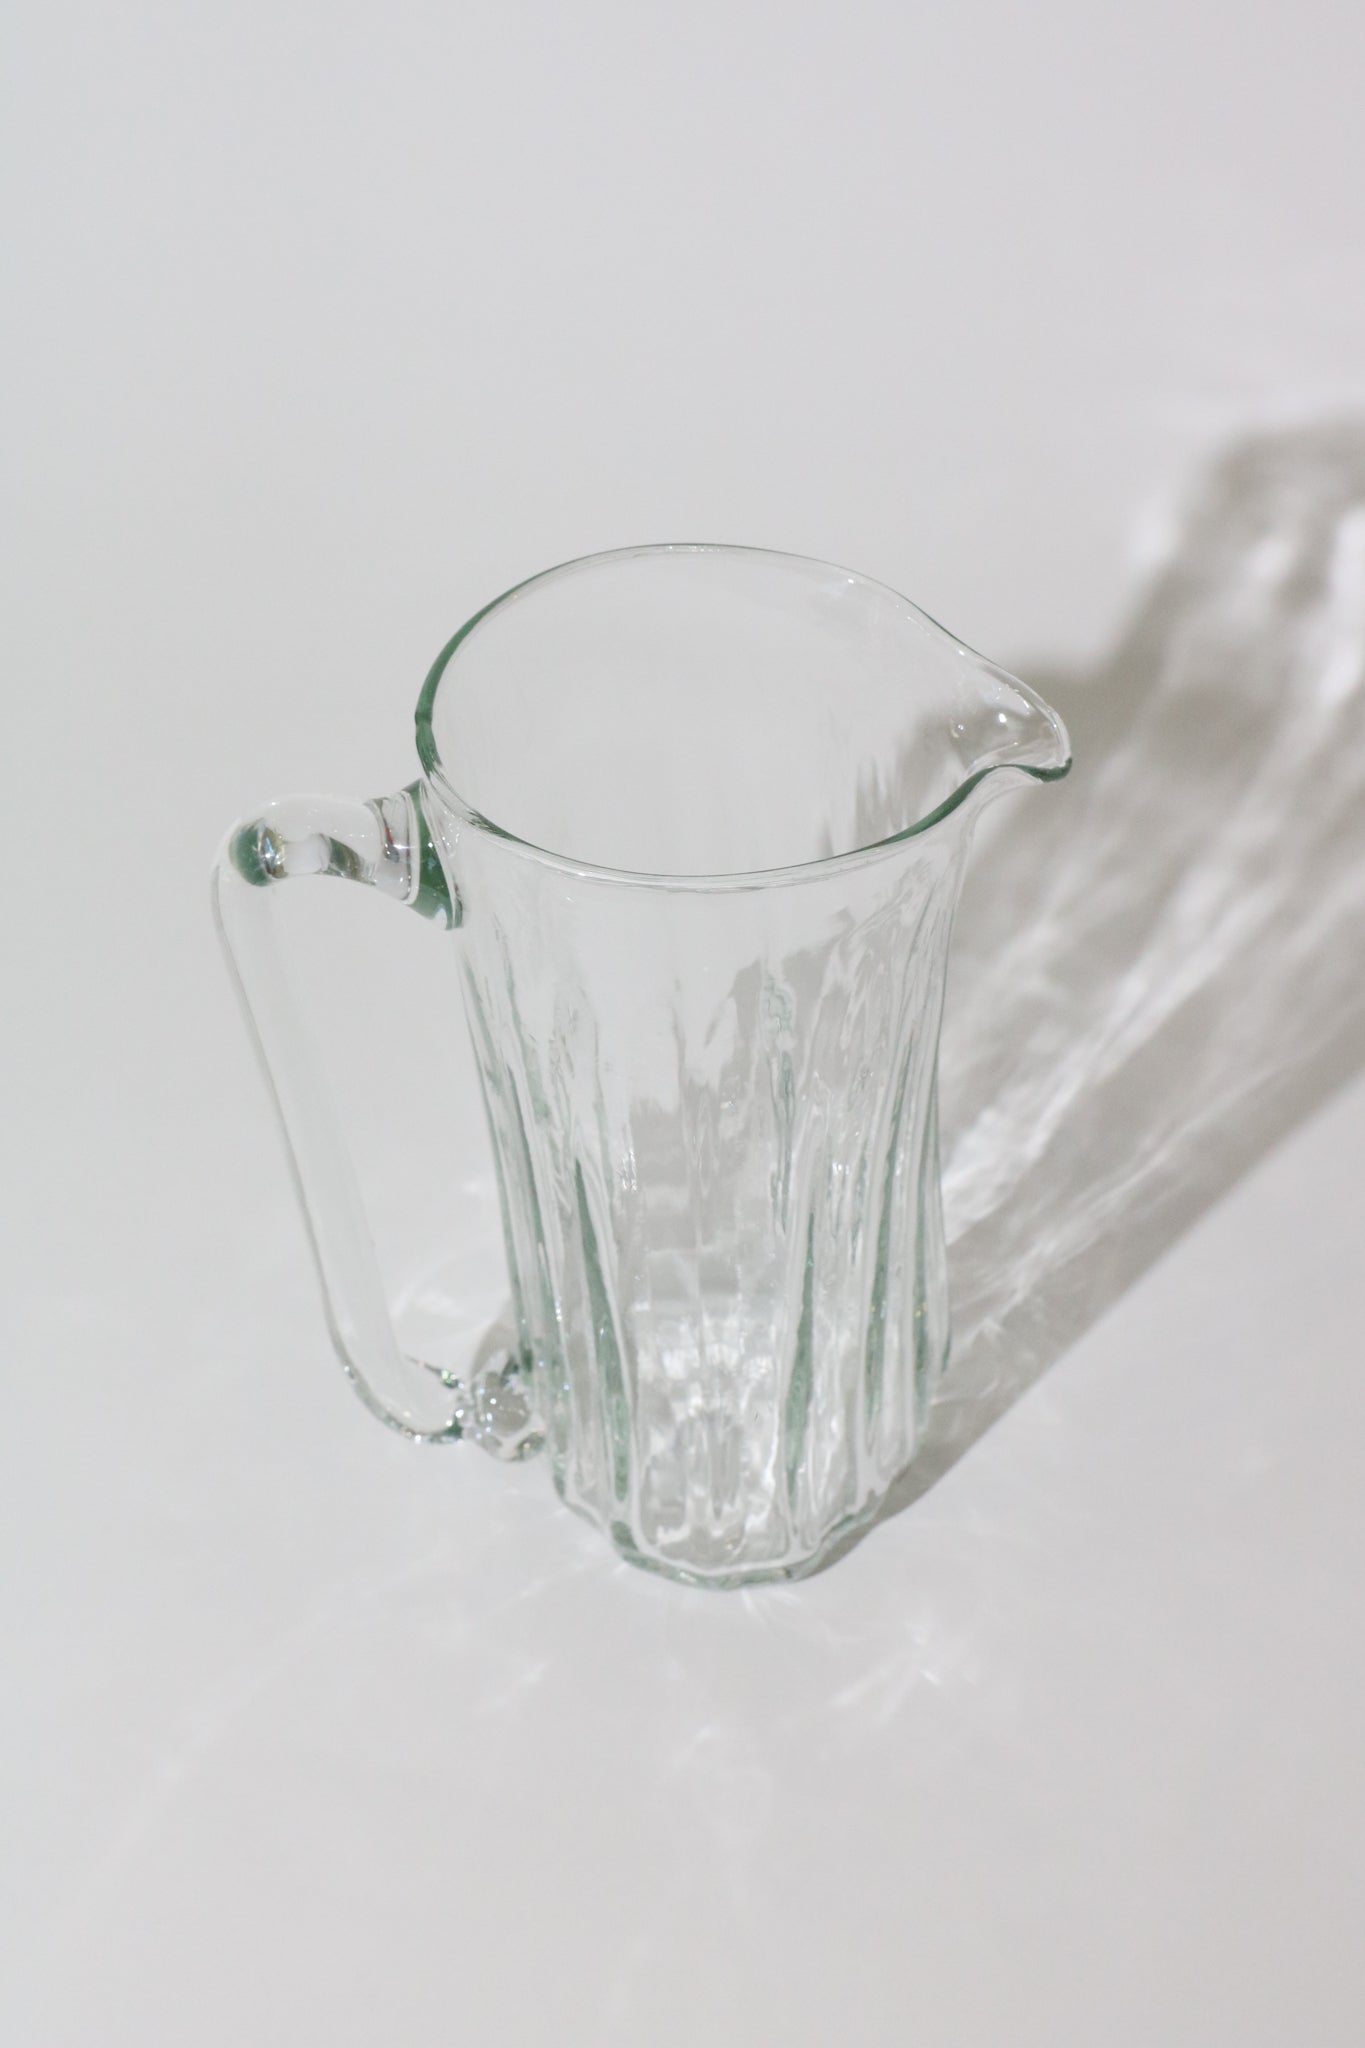 https://shopsommer.com/cdn/shop/products/Xaquixe-Tall-Glass-Pitcher-1.jpg?v=1675641540&width=2000